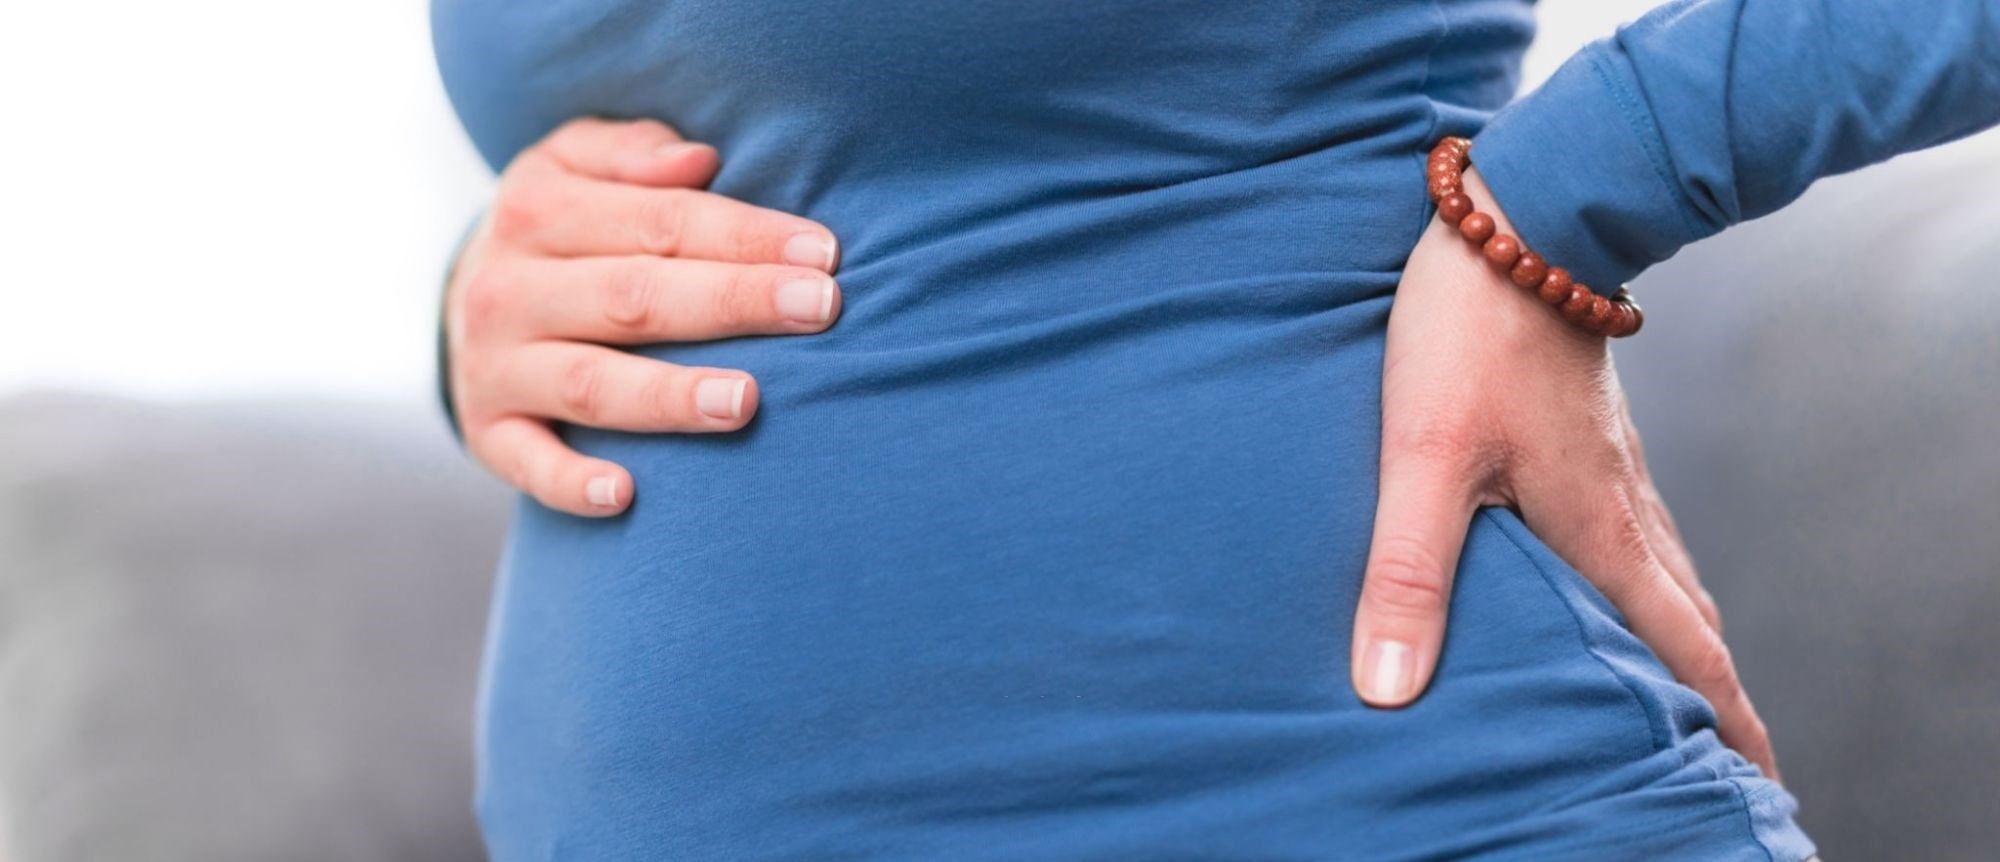 کیست در بارداری - درمان کیست تخمدان در خانه